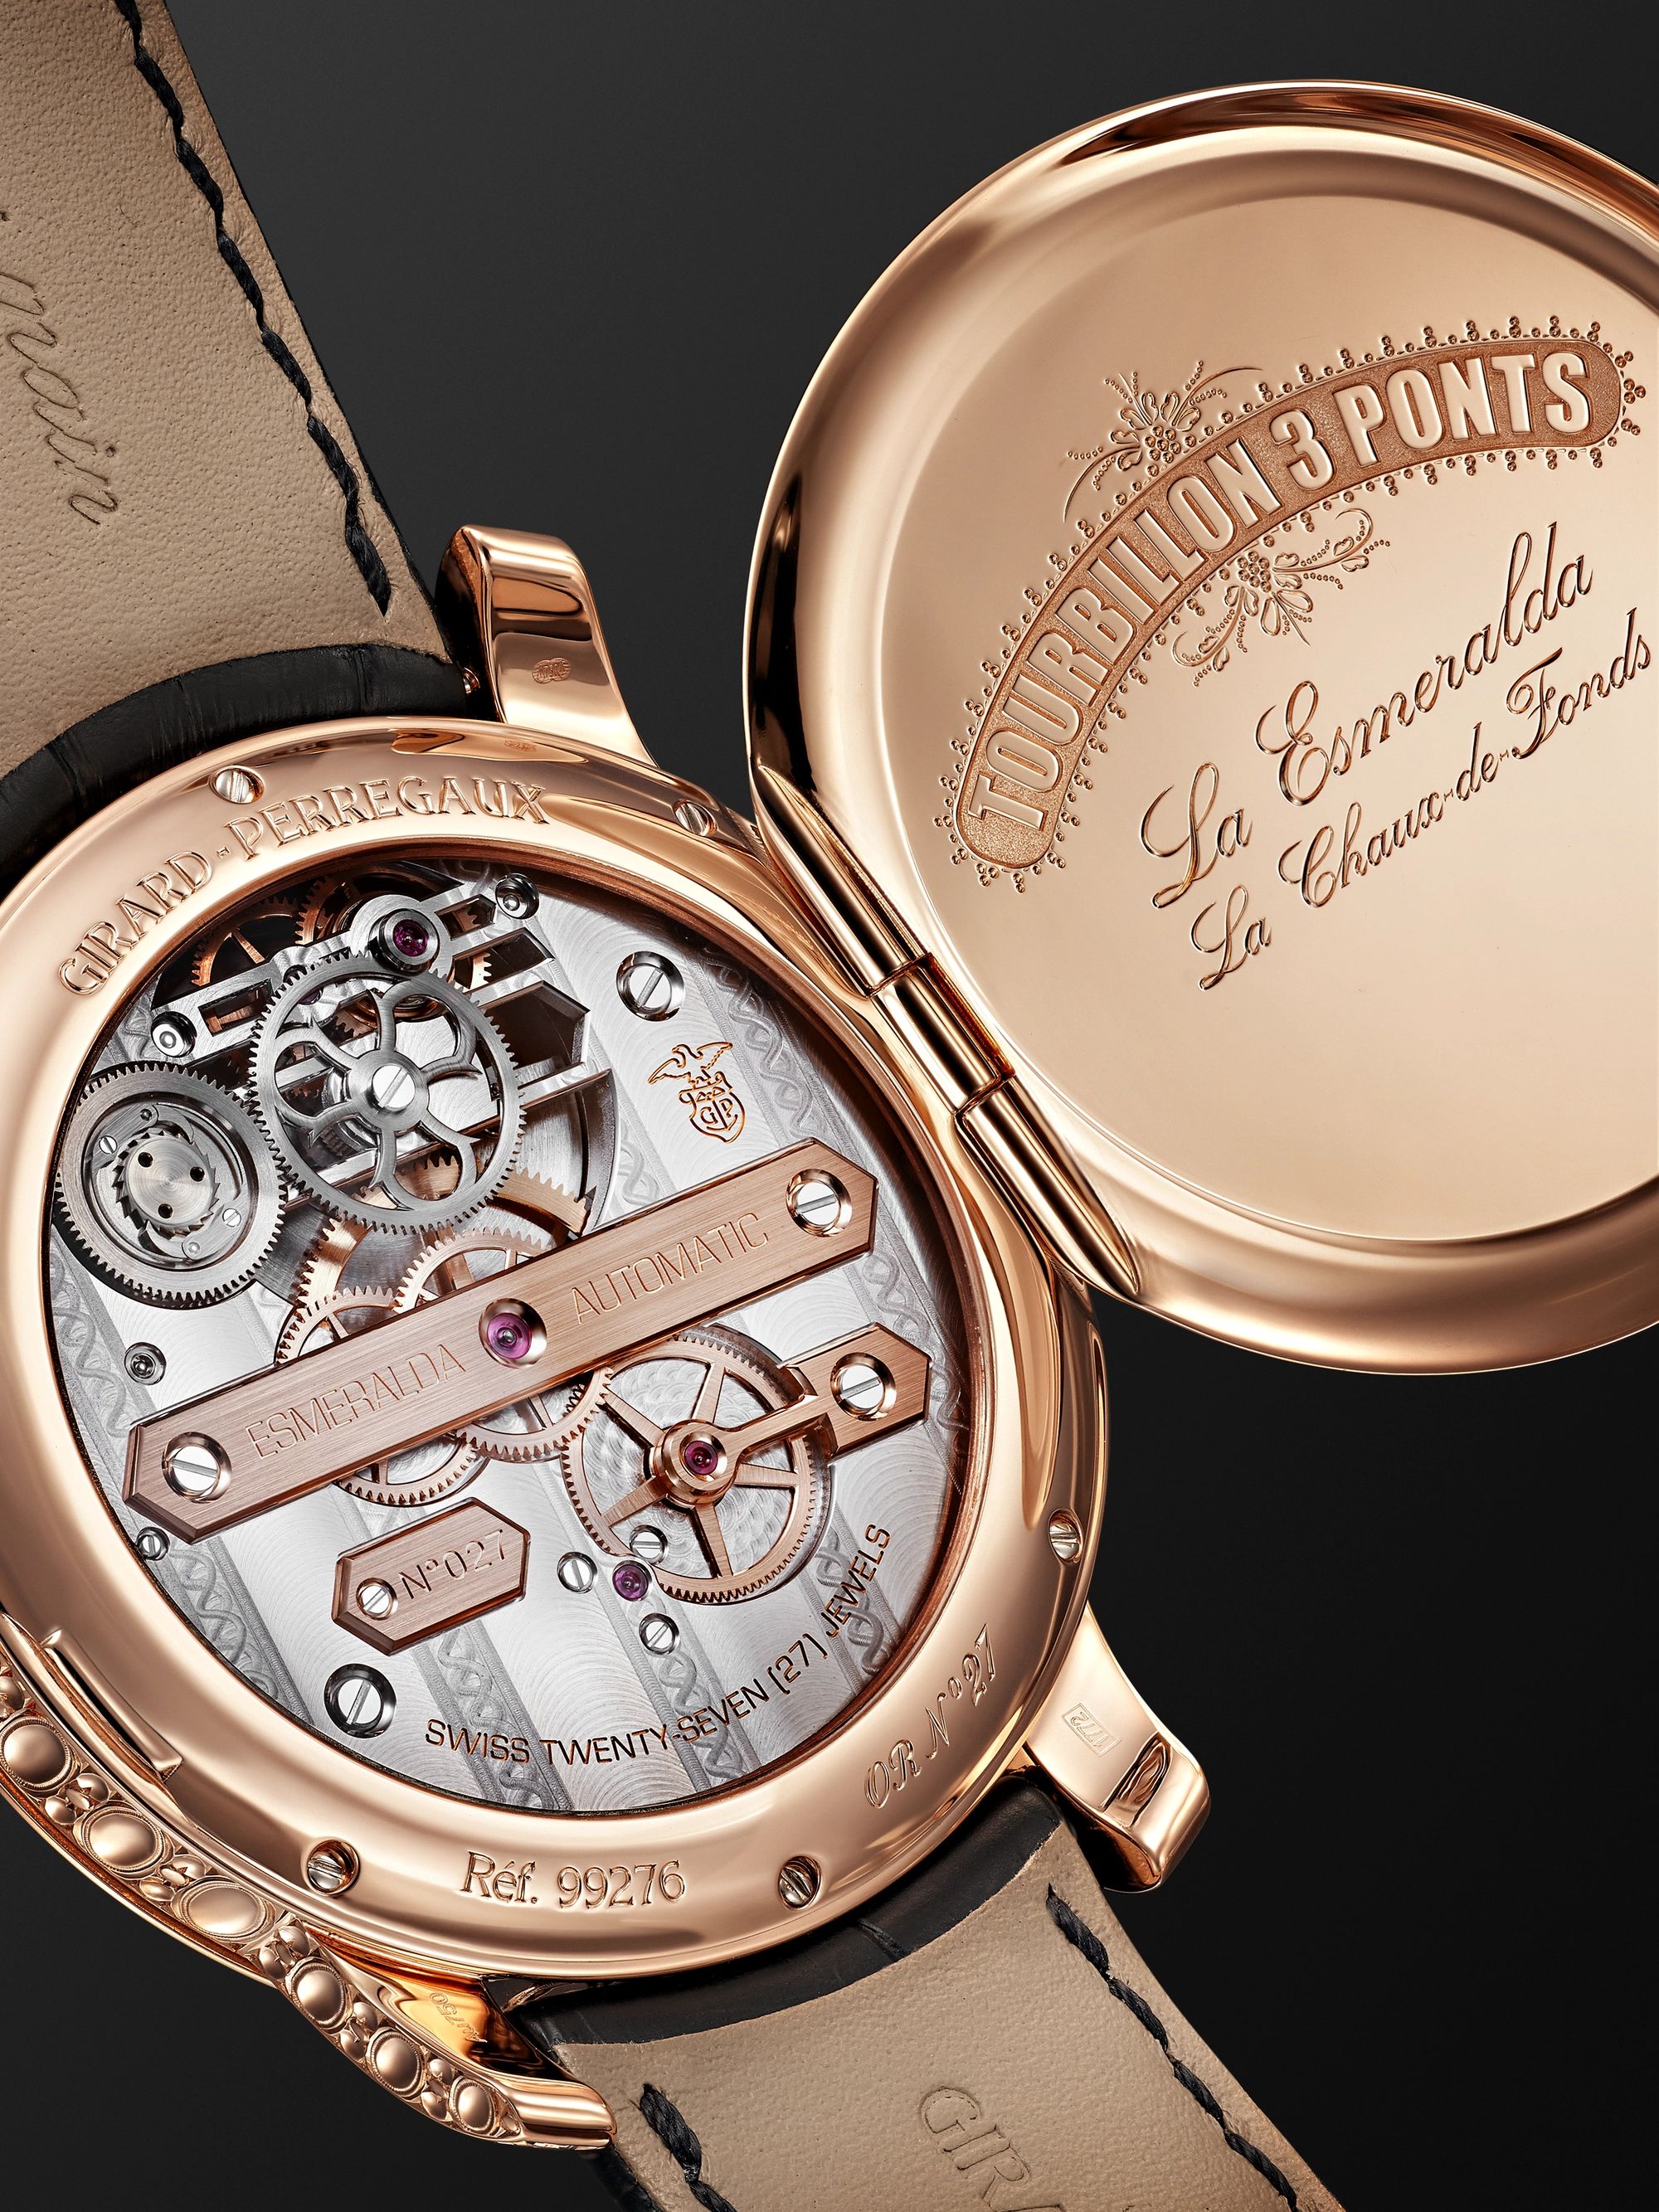 GIRARD-PERREGAUX La Esmeralda Automatic Tourbillon 44mm Pink Gold and Alligator Watch, Ref. No. 99276-52-000-BA6E